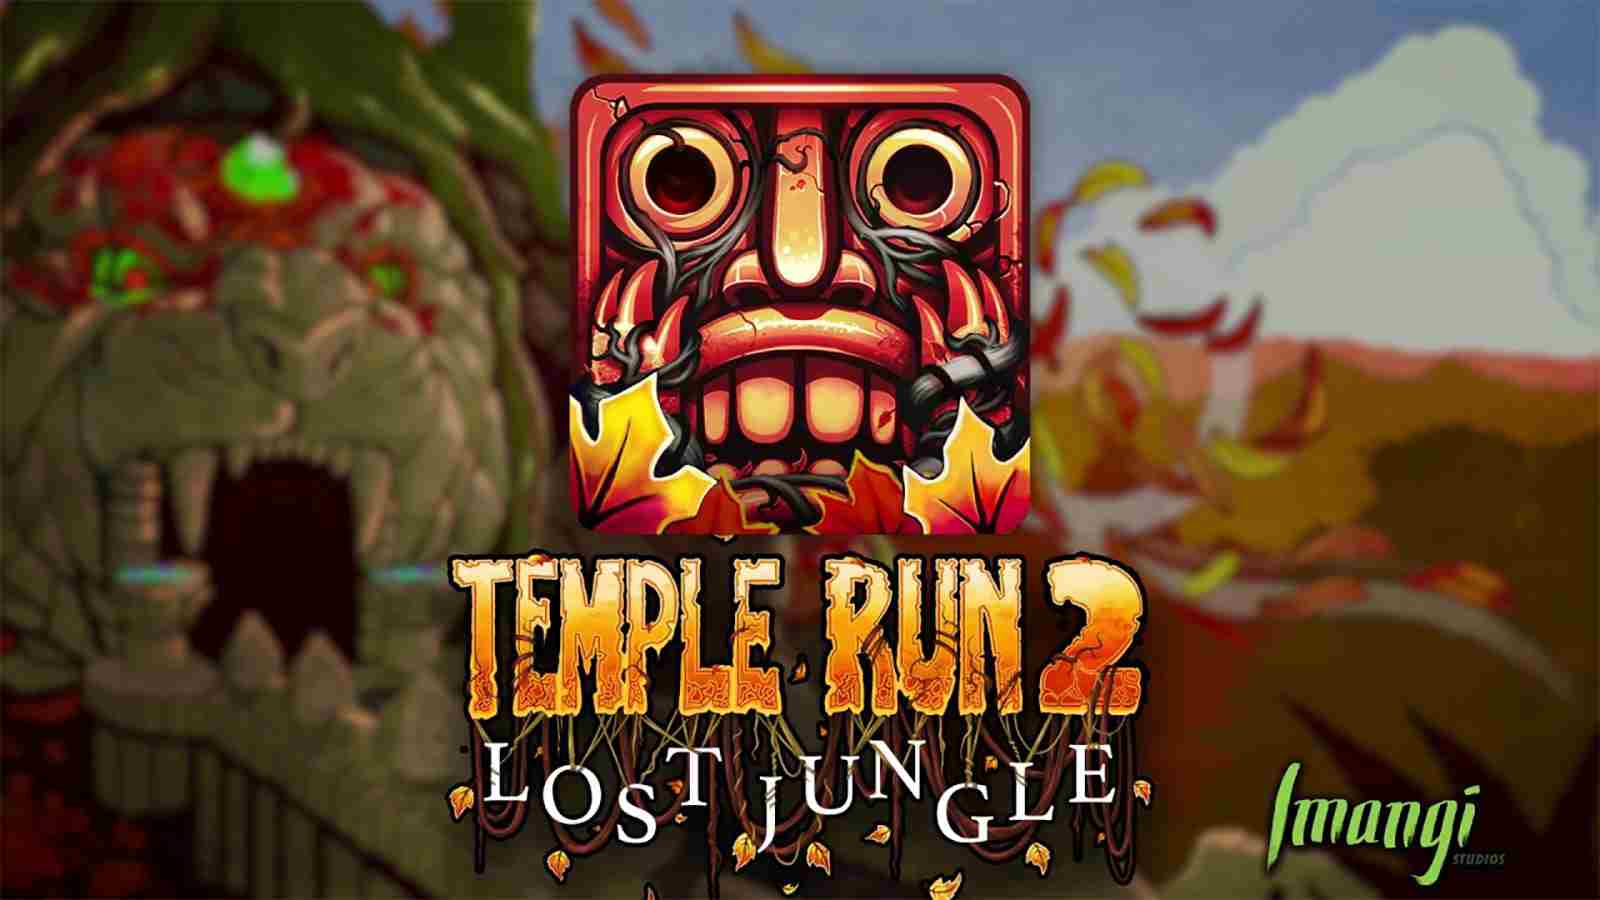 hack temple run 2 download